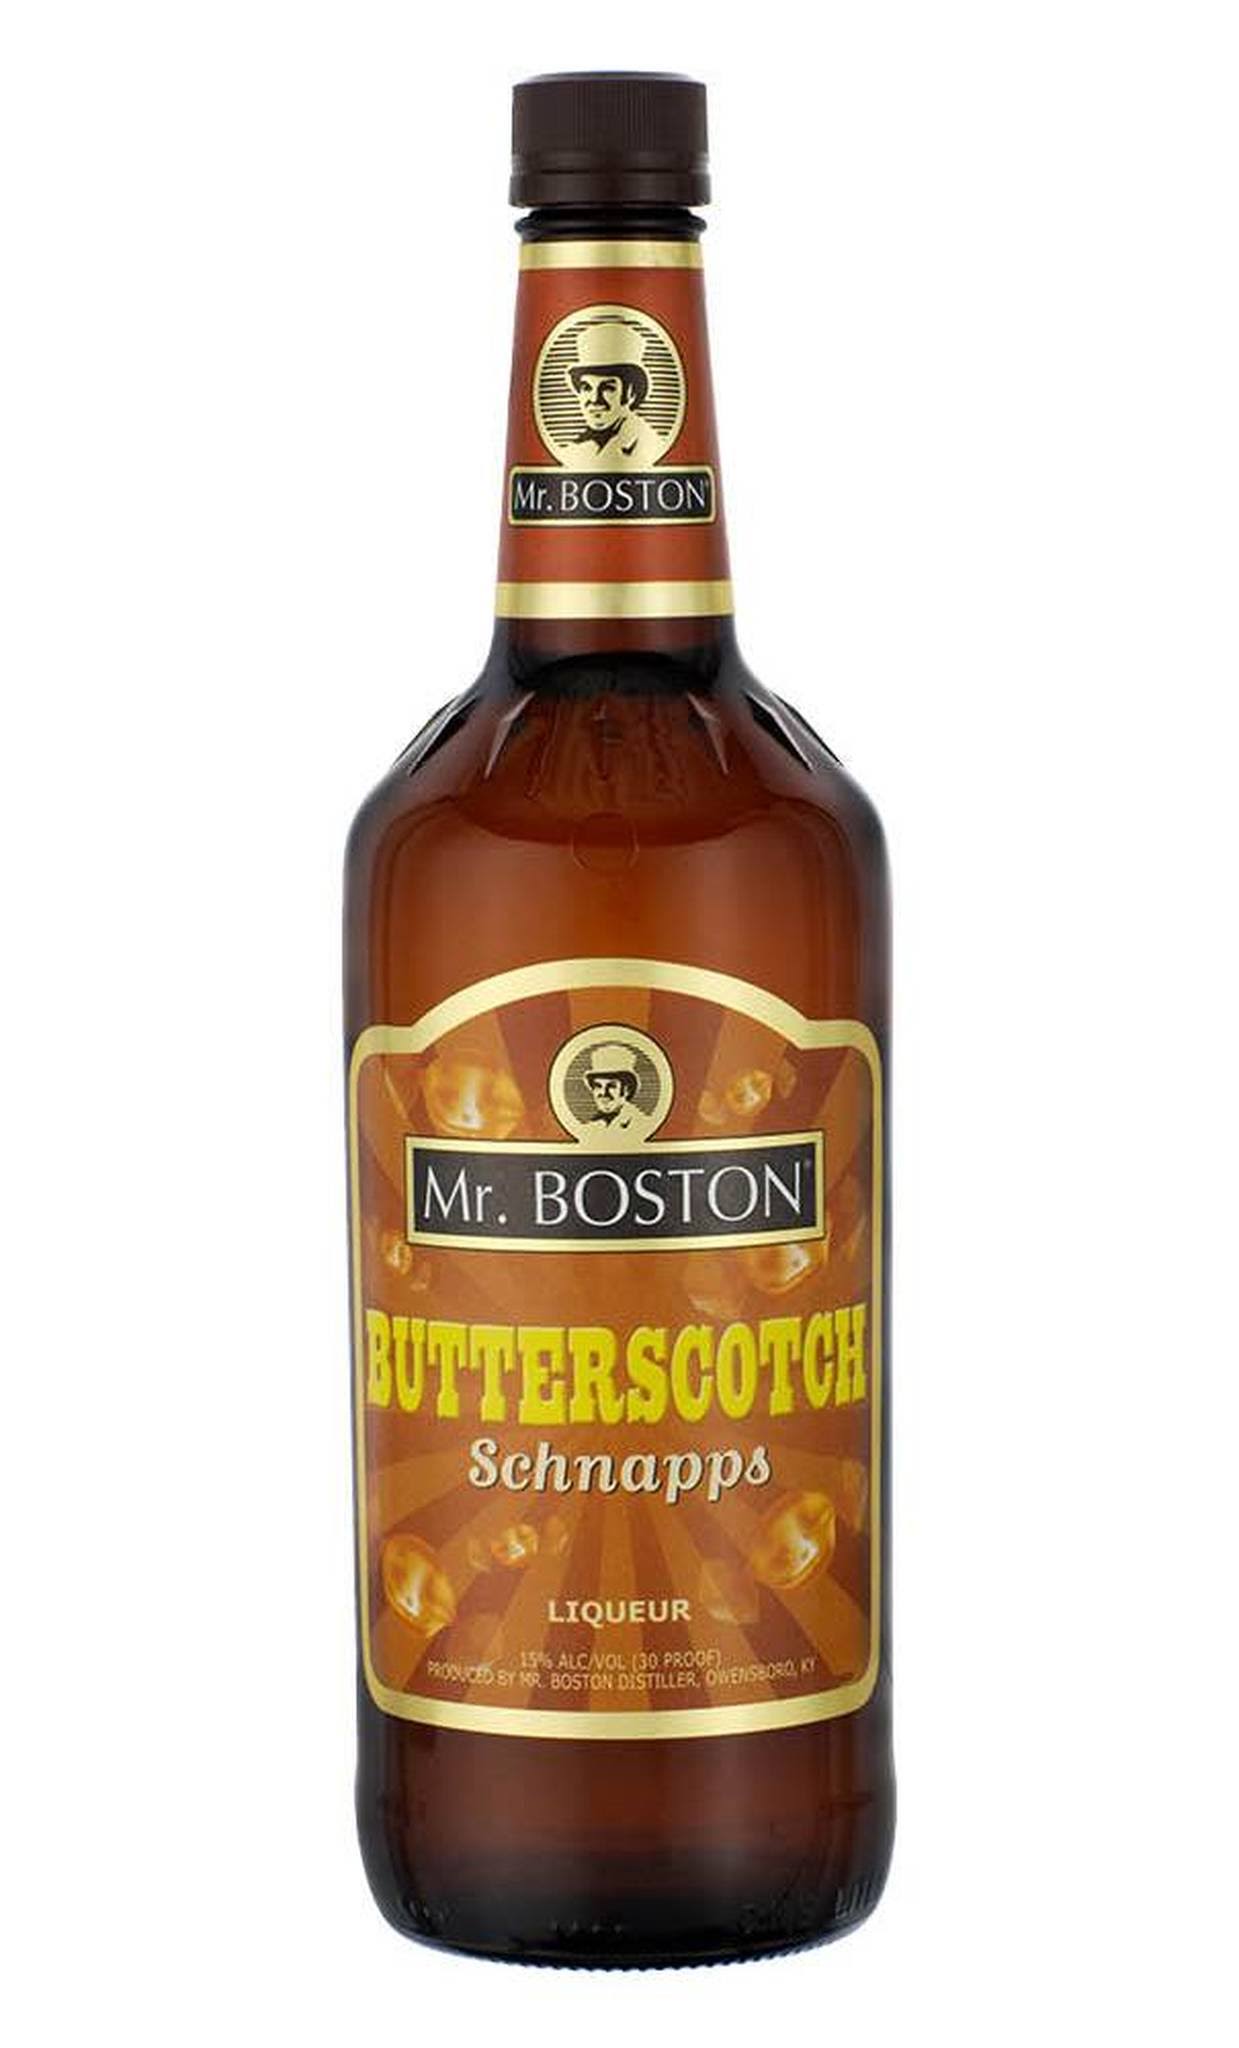 Mr Boston Butterskoch Schnaaps Liqueur - 25.36oz